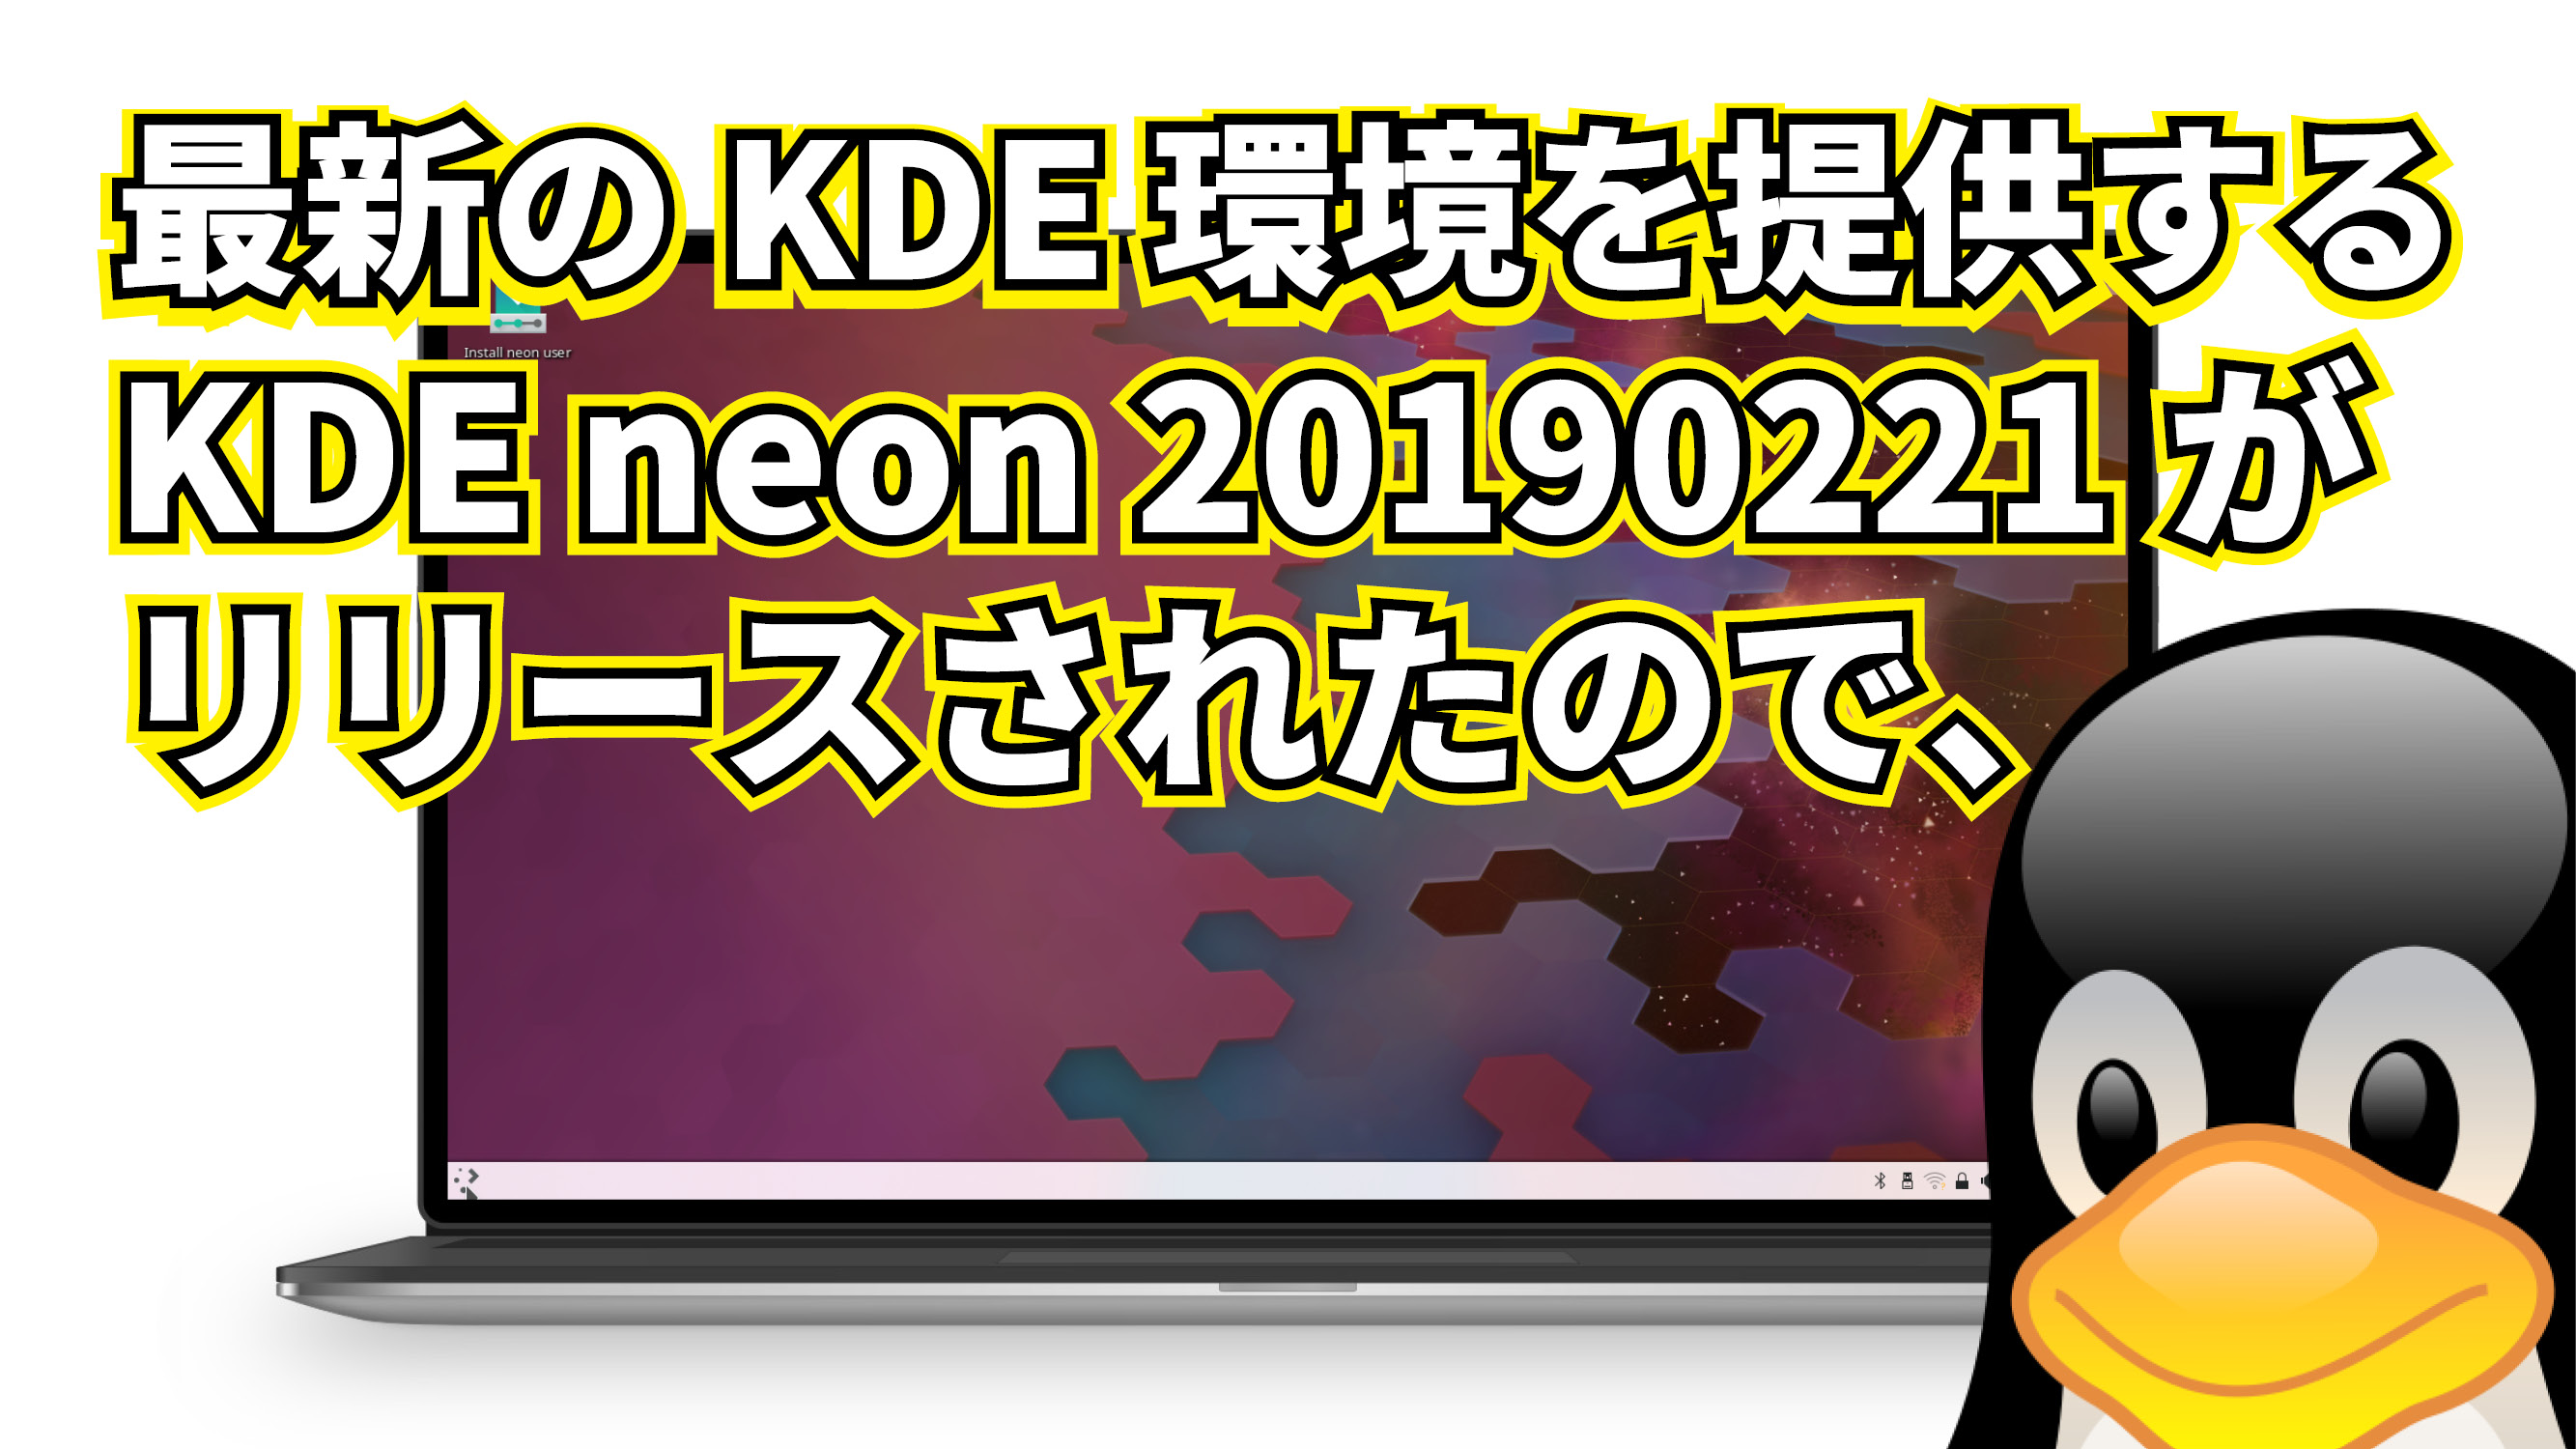 最新の KDE 環境を提供する KDE neon 20190221 がリリースされたので、